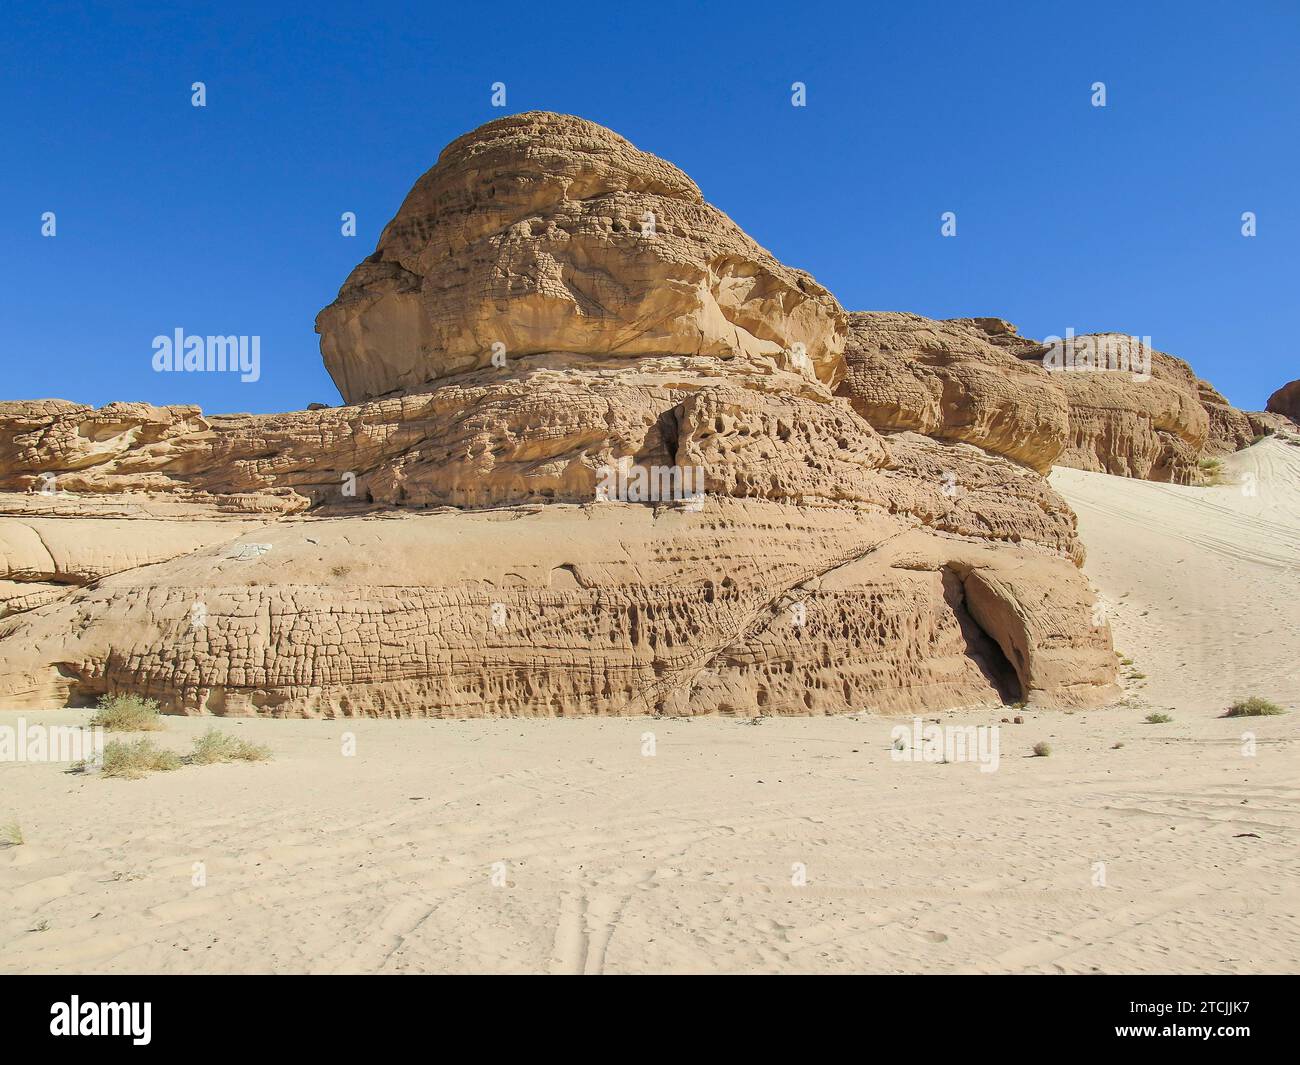 Erodierte Felsen, Berglandschaft im südlichen Sinai zwischen Ain Khudra und Nuwaiba, Ägypten *** erodierte Felsen, Berglandschaft im südlichen Sinai zwischen Ain Khudra und Nuwaiba, Ägypten Stockfoto